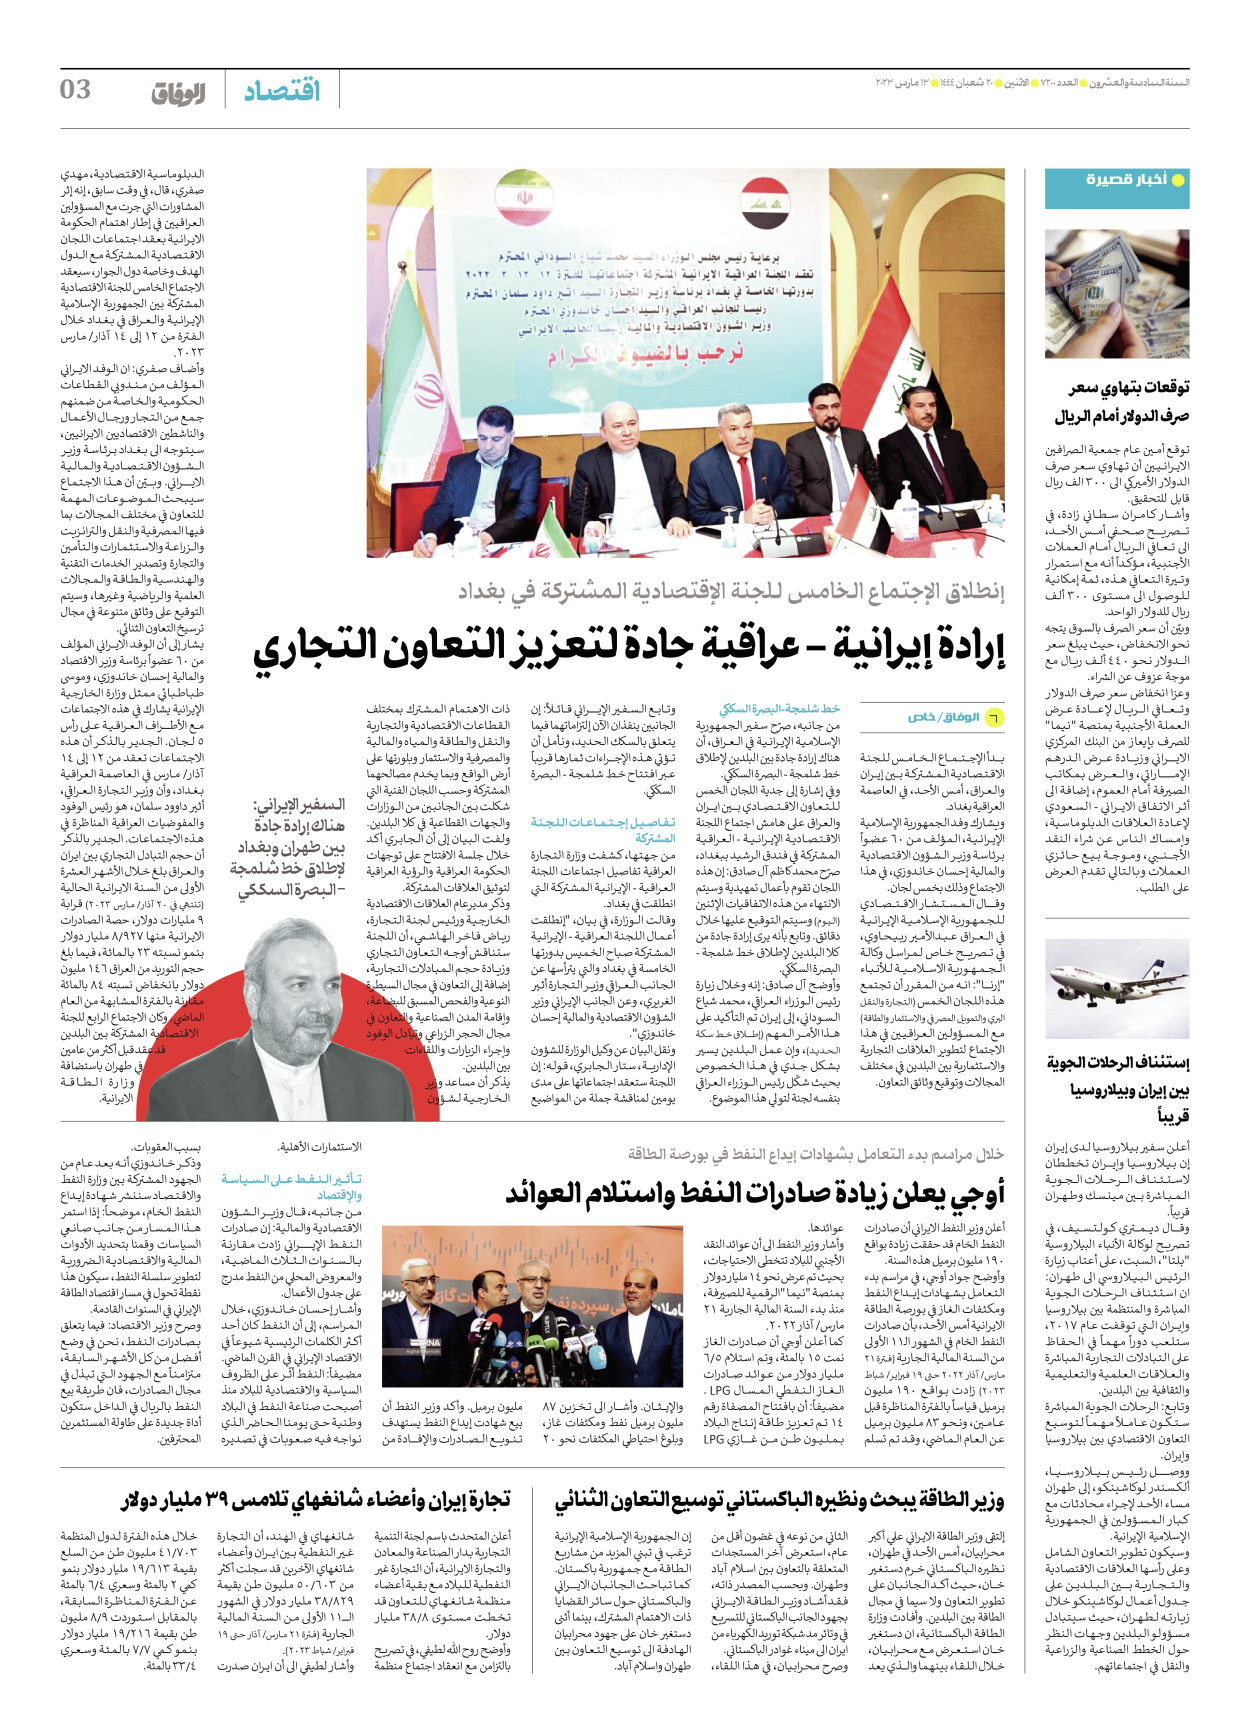 صحیفة ایران الدولیة الوفاق - العدد سبعة آلاف ومائتان - ١٣ مارس ٢٠٢٣ - الصفحة ۳